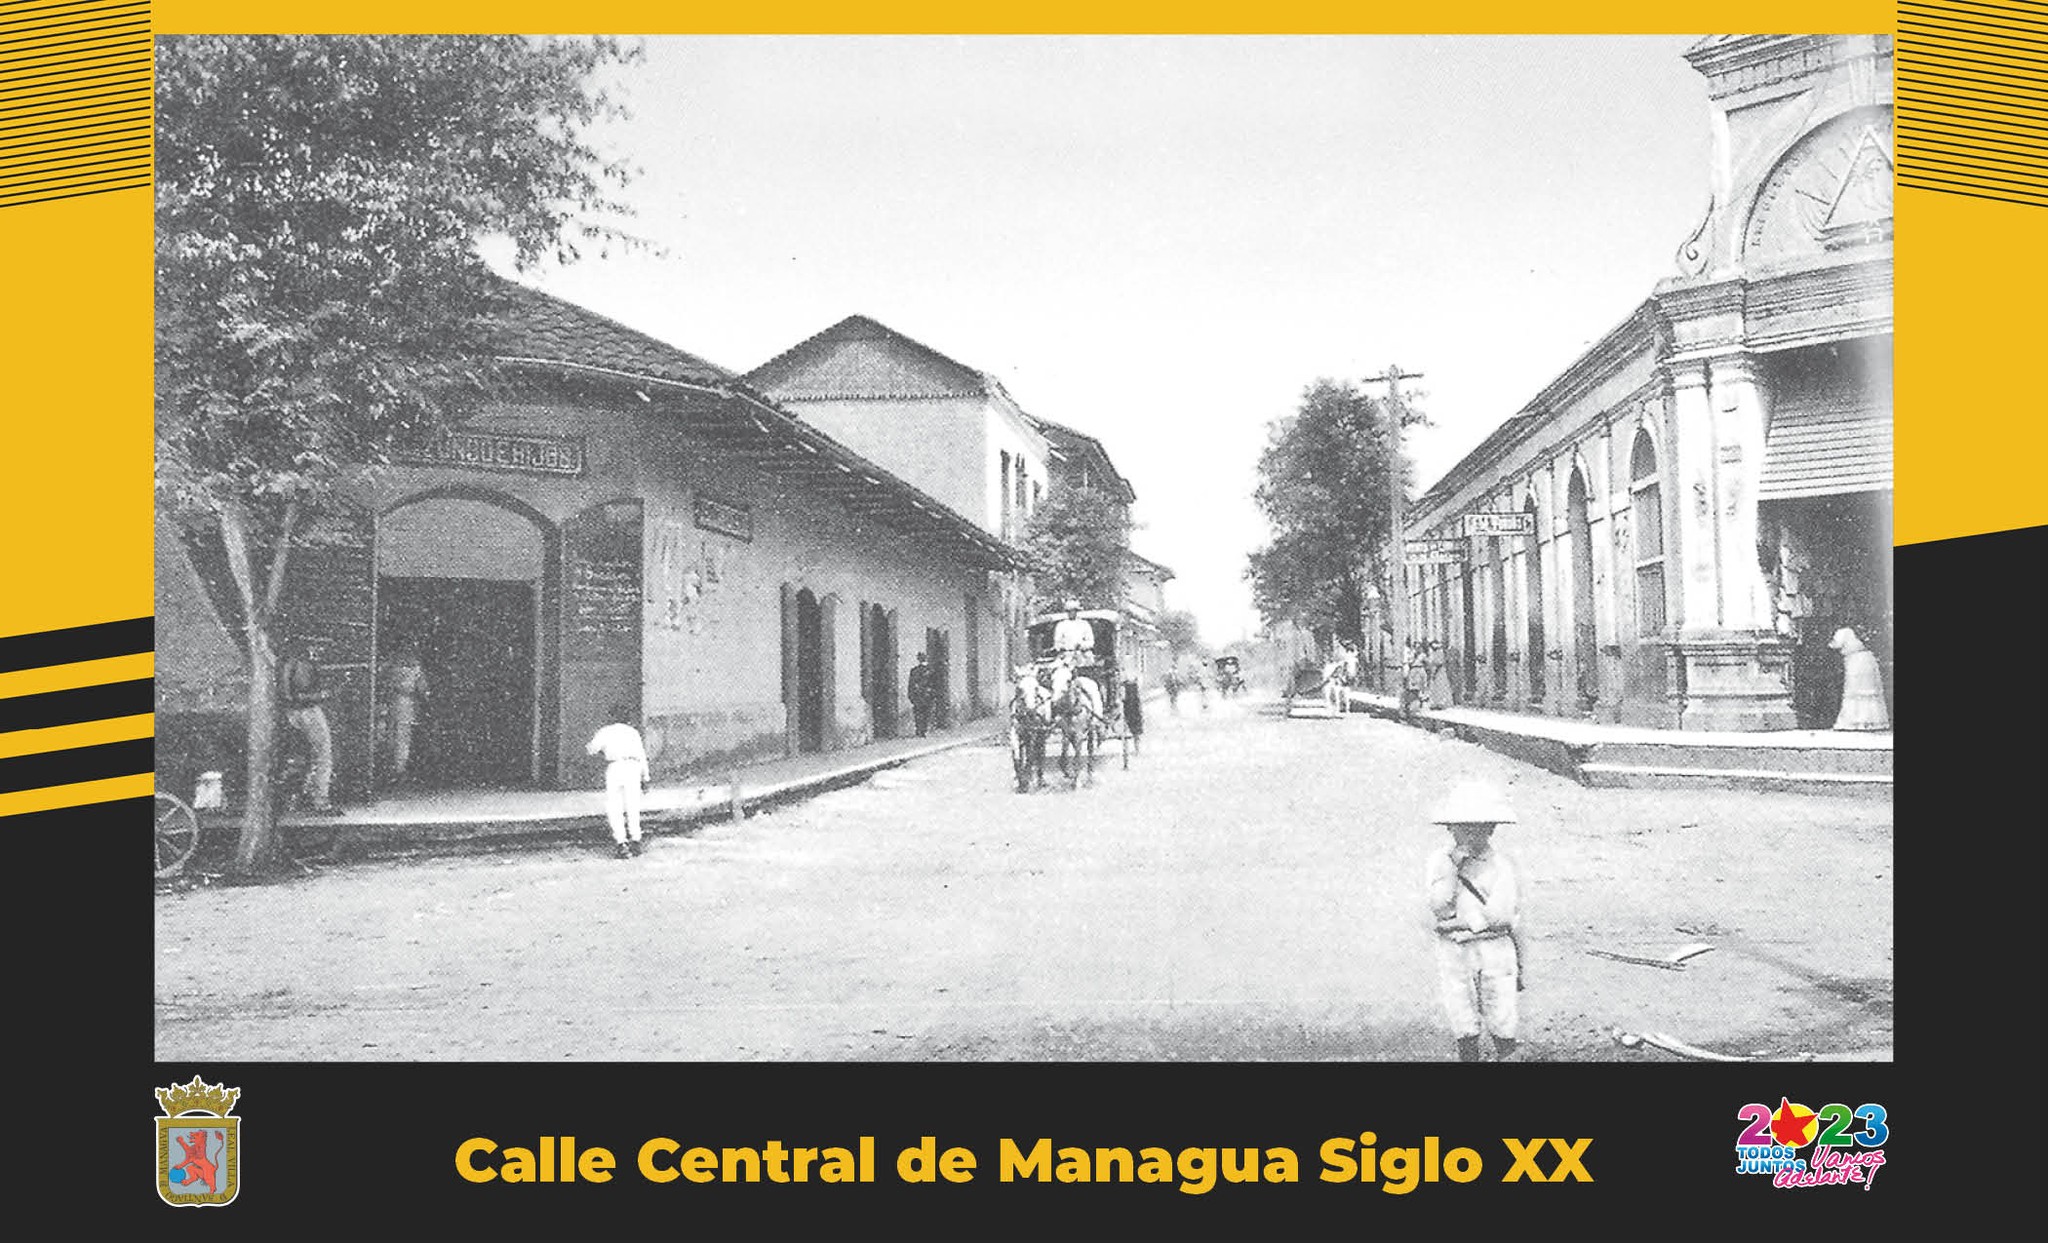 Patrimonio Histórico: Memorias de la evolución de Managua (FOTOS)